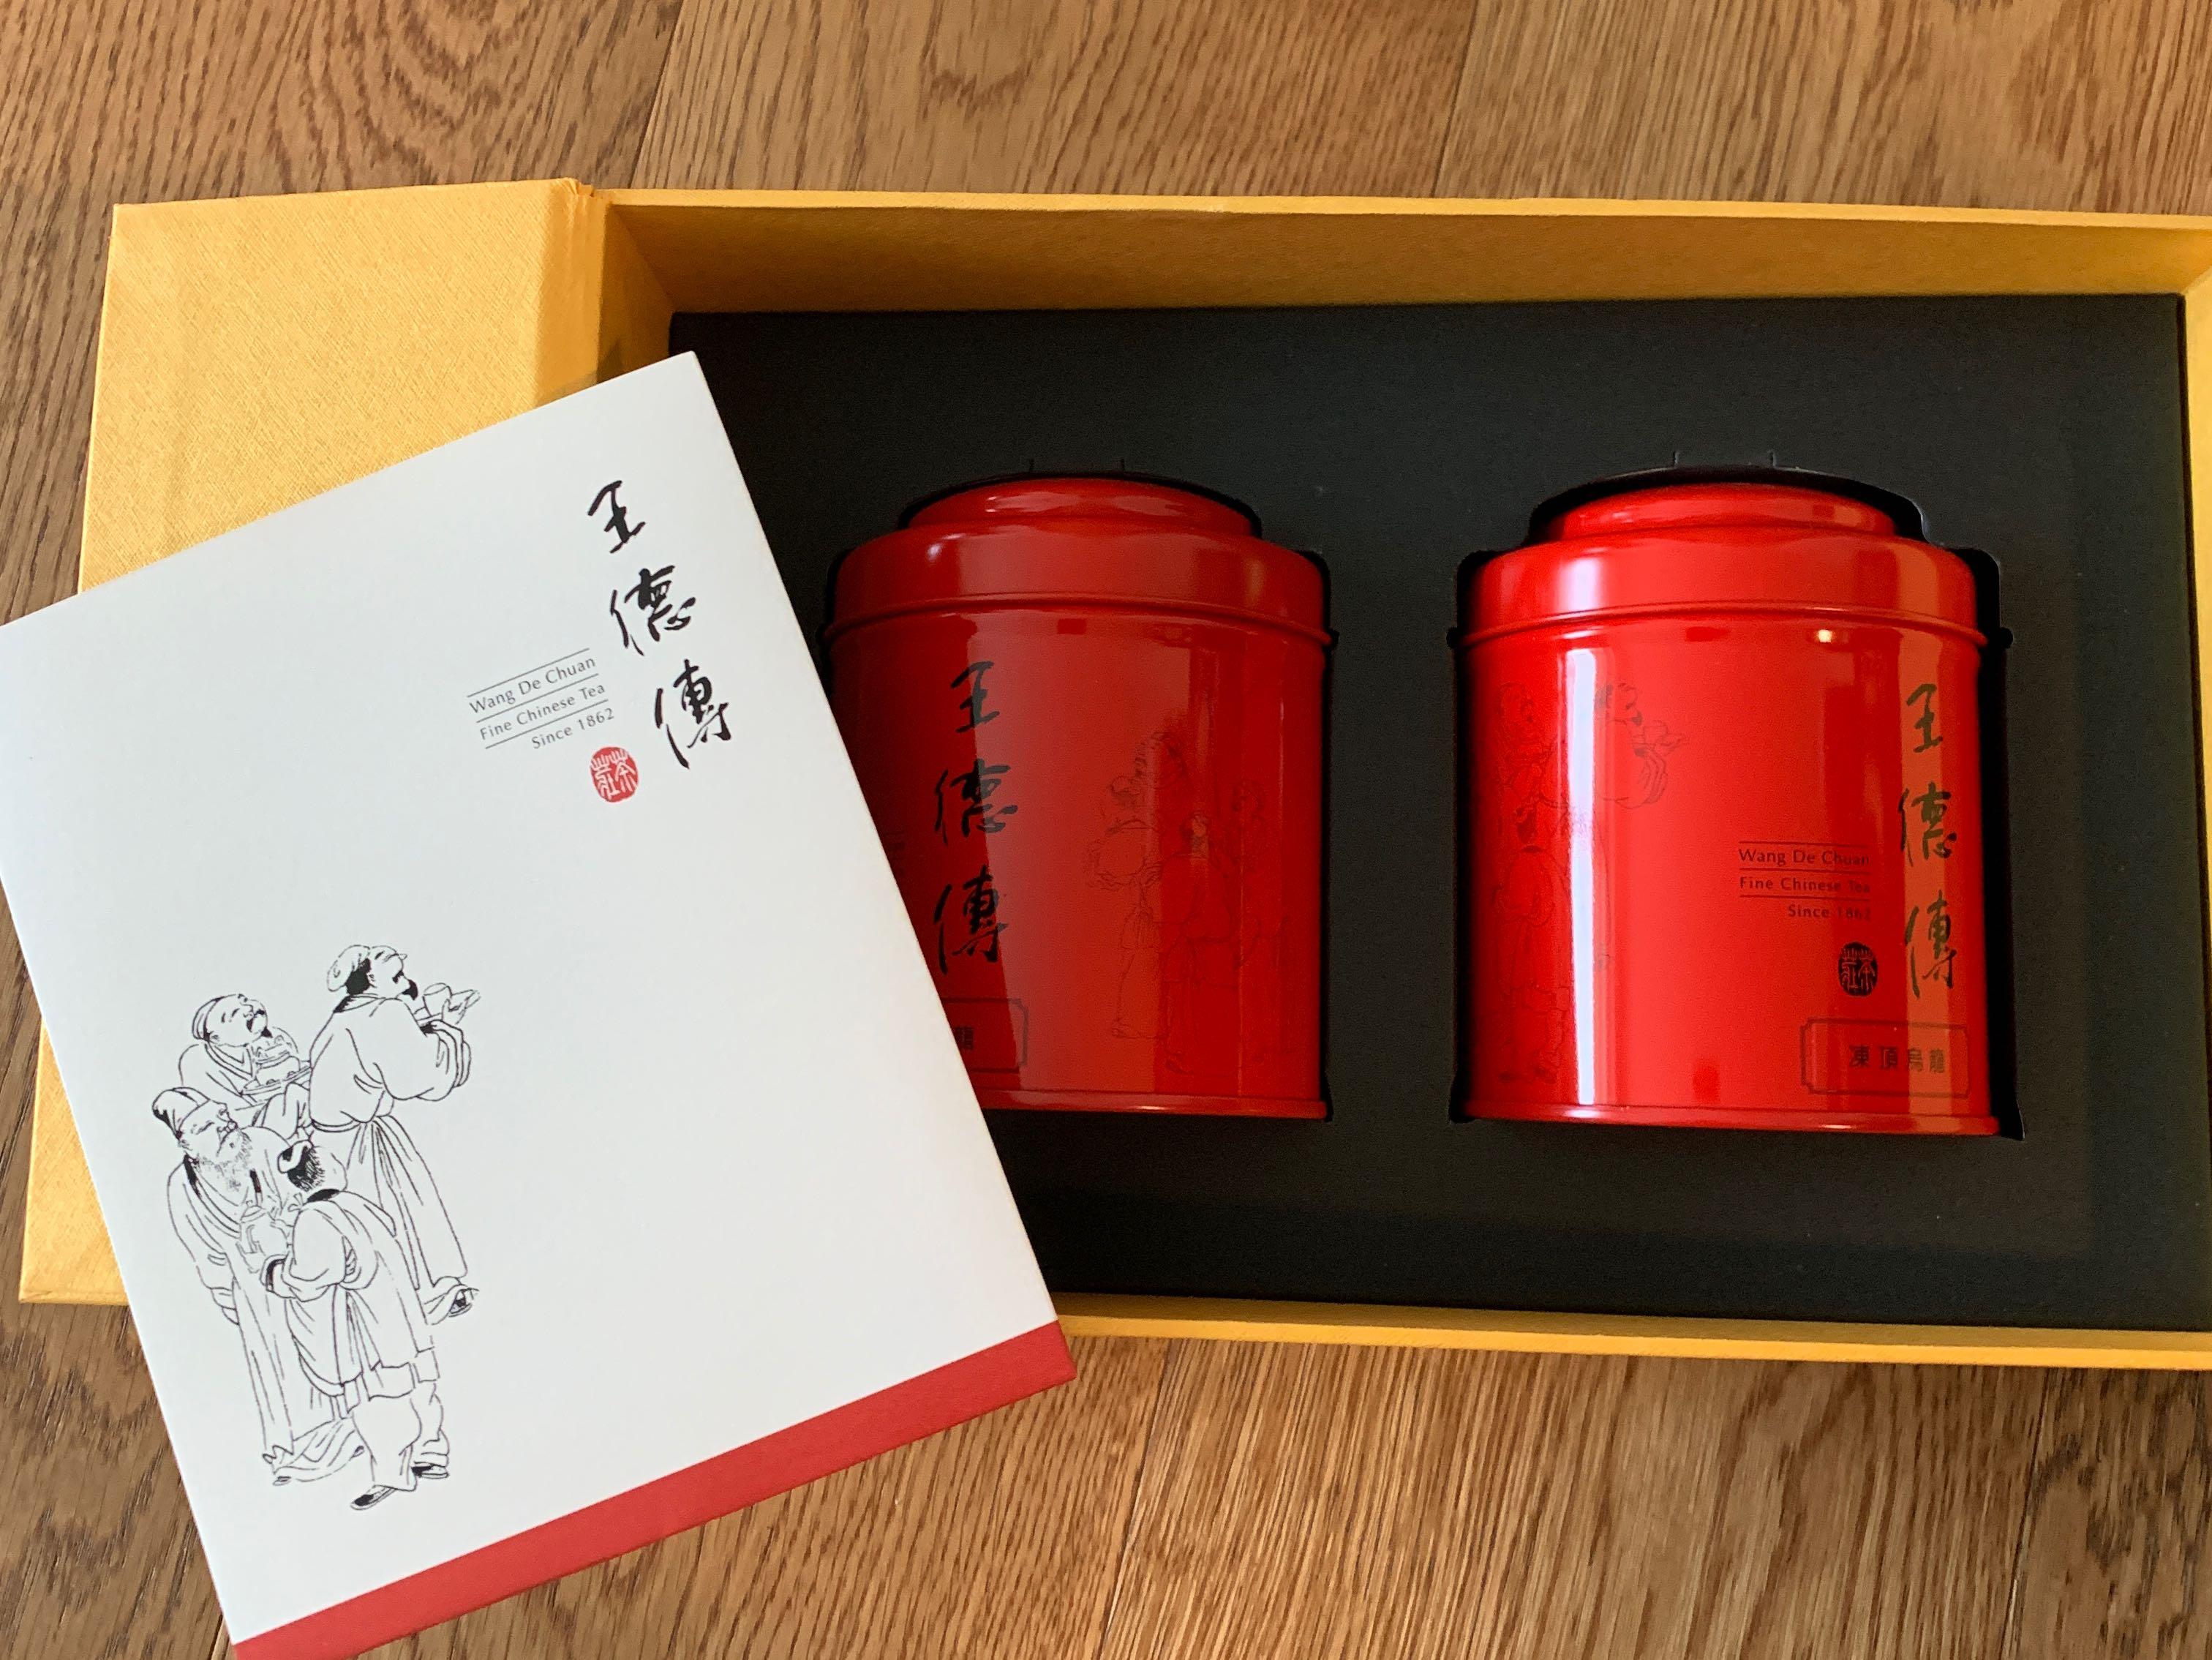 王德傳Fine Chinese Tea / 凍頂烏龍& 四季烏龍DG luxury 包裝, 嘢食 